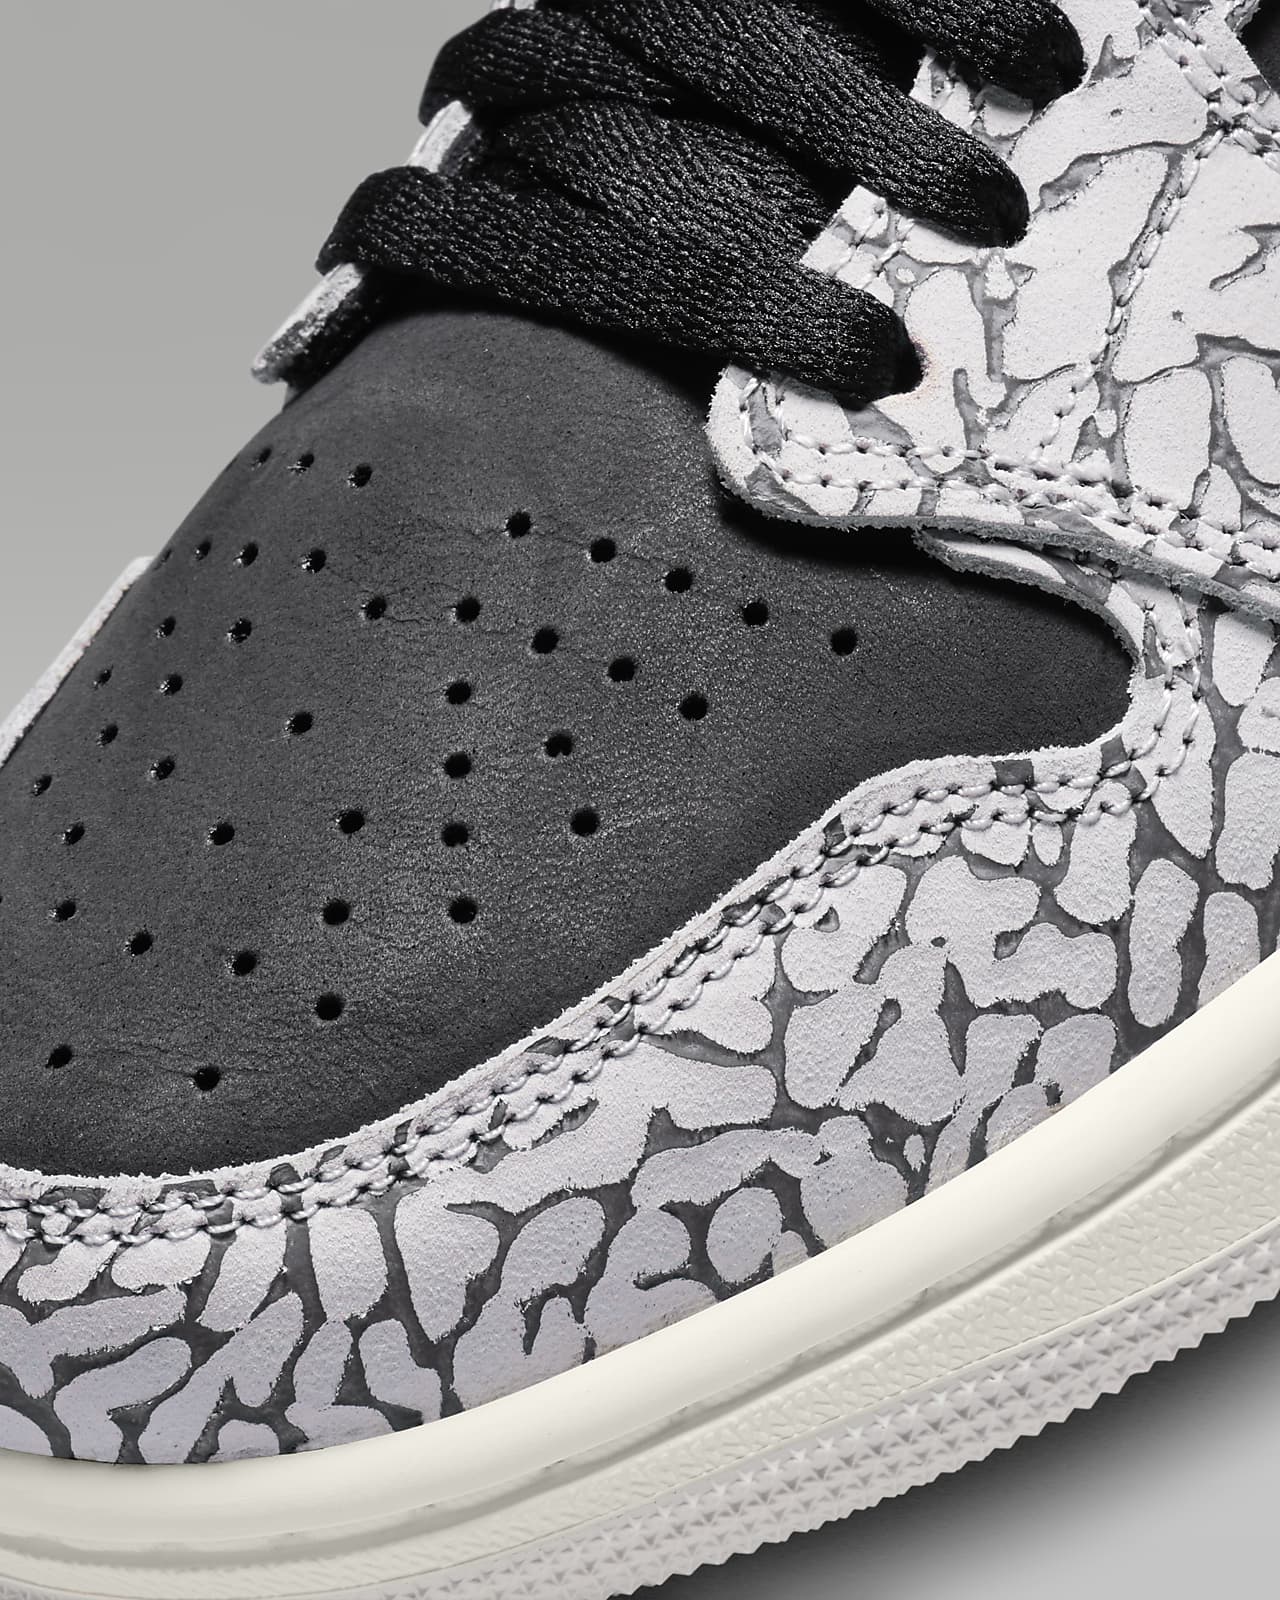 COOL!! Nike Air Jordan 1 Black Cement